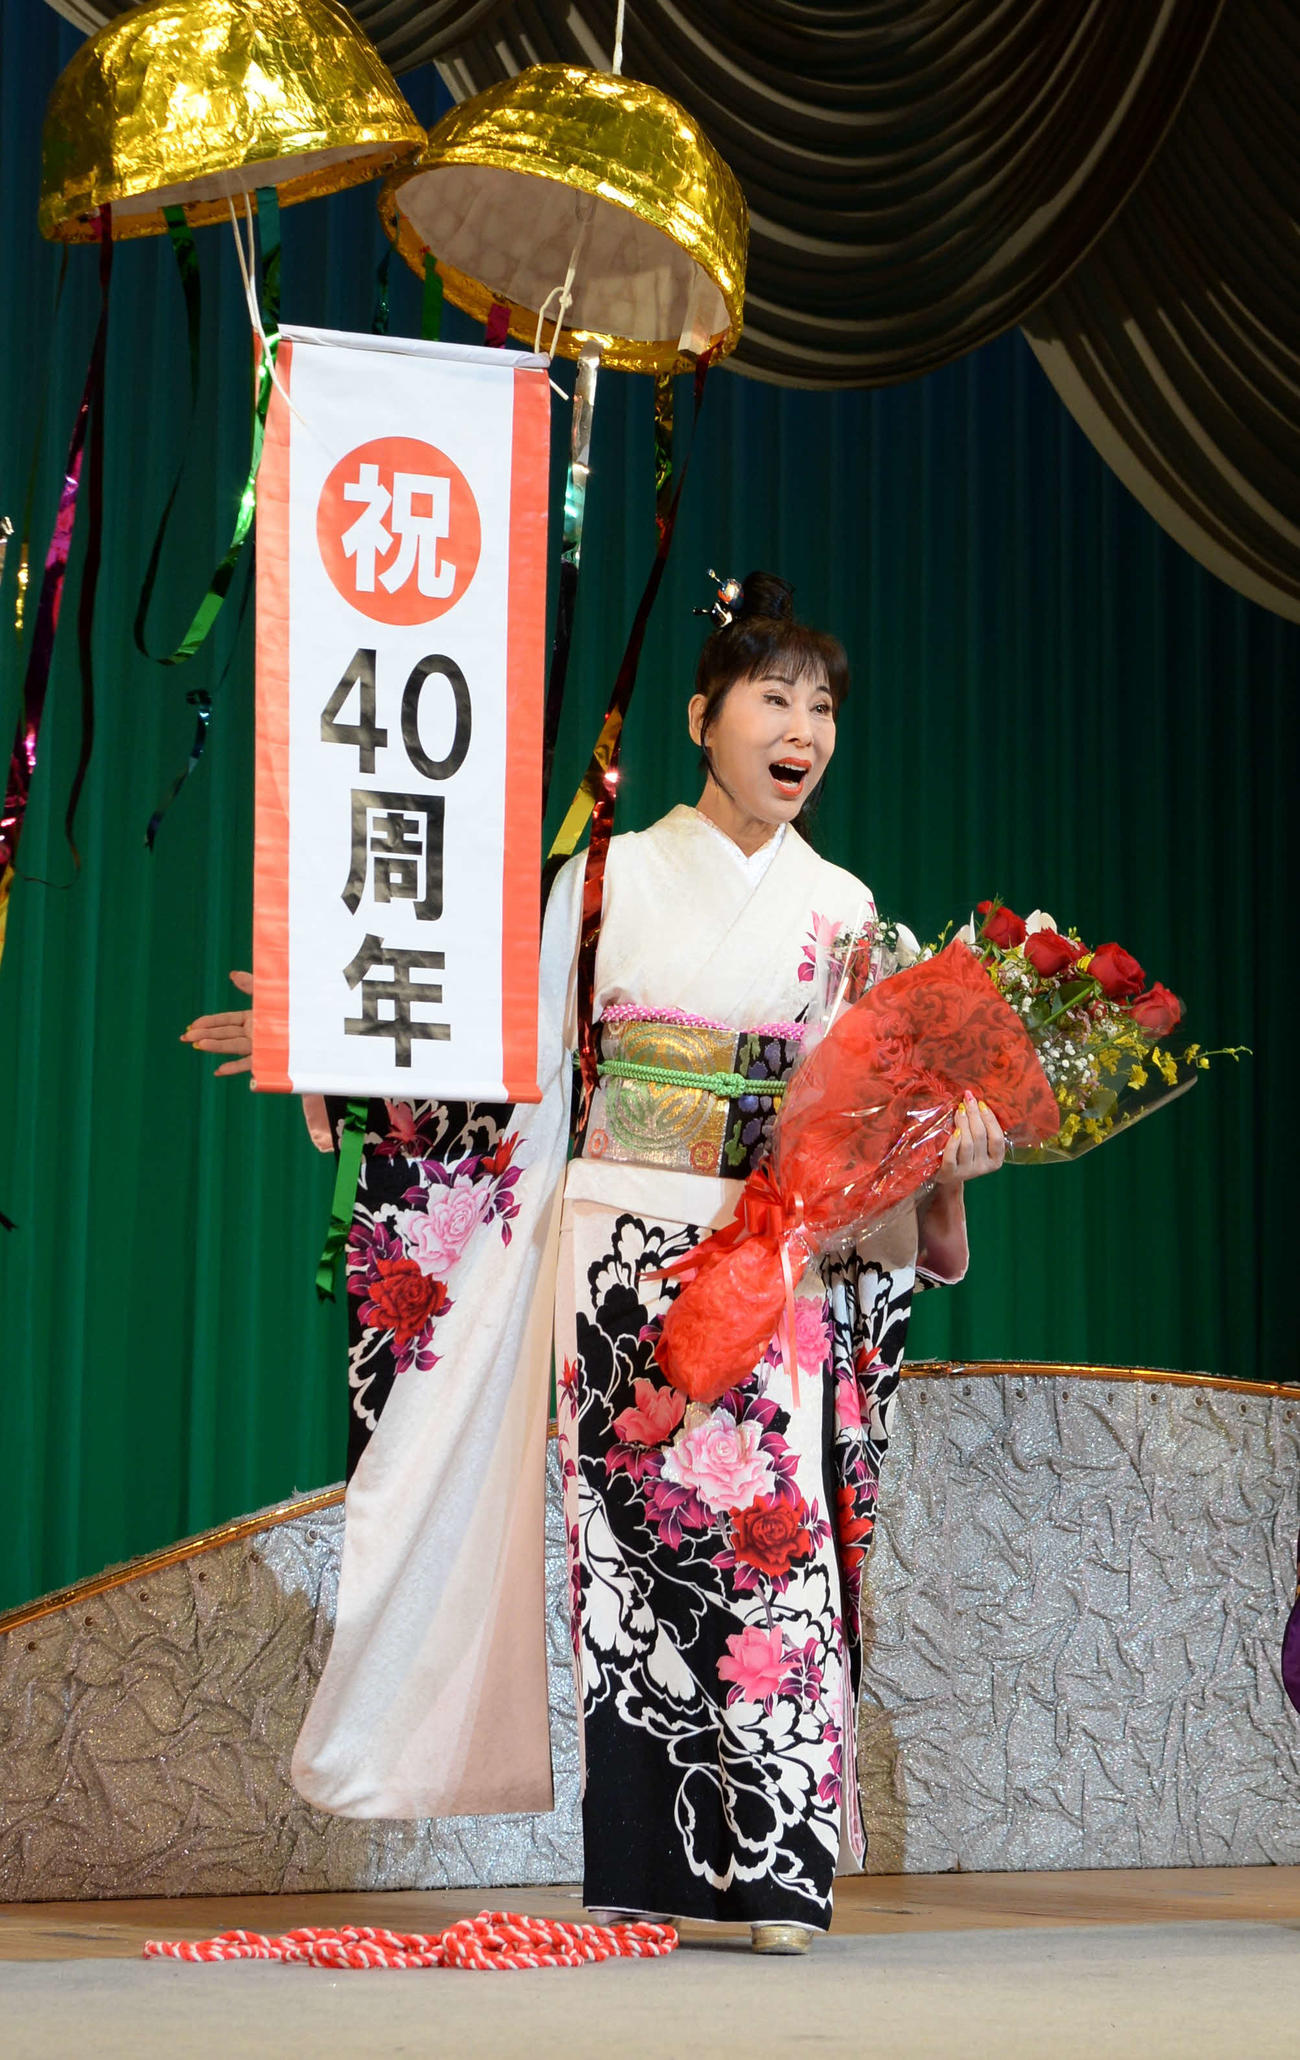 記念公演を行った原田悠里はくす玉で40周年を祝福された